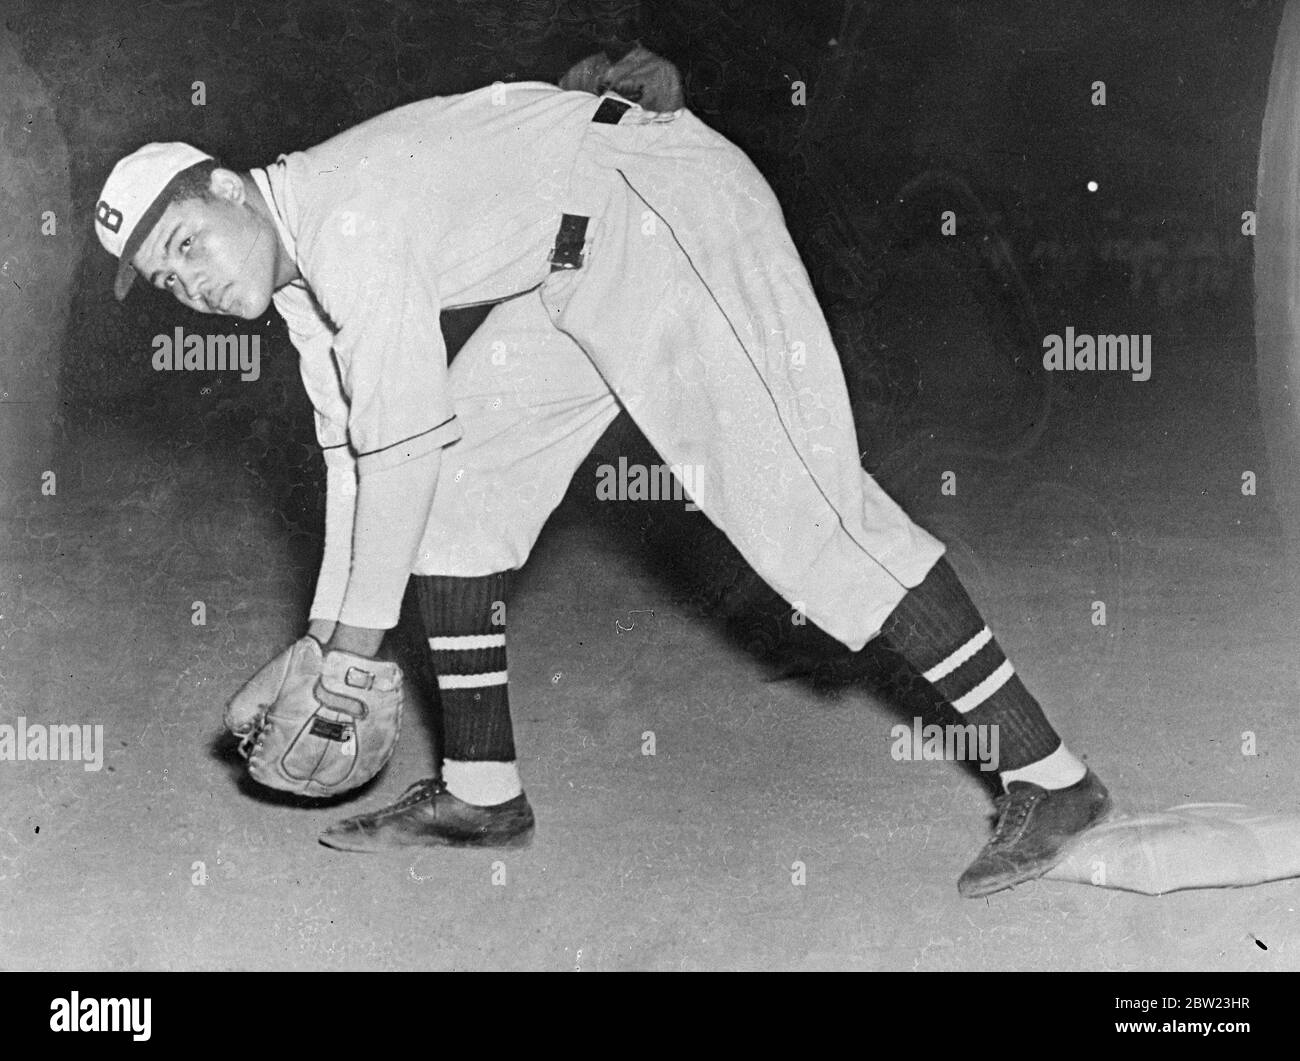 Joe Louis, der Schwergewicht-Boxweltmeister, hat sich in vollem Softball-Kit aufgepolstert und spielt für das Team, von dem er ein Unterstützer ist, die Detroit Brown Bombers. Joe Louis ( der braune Bomber ) soll seinen Boxtitel gegen Tommy Farr , den britischen und Empire-Champion, verteidigen. 22 Juli 1937. Stockfoto